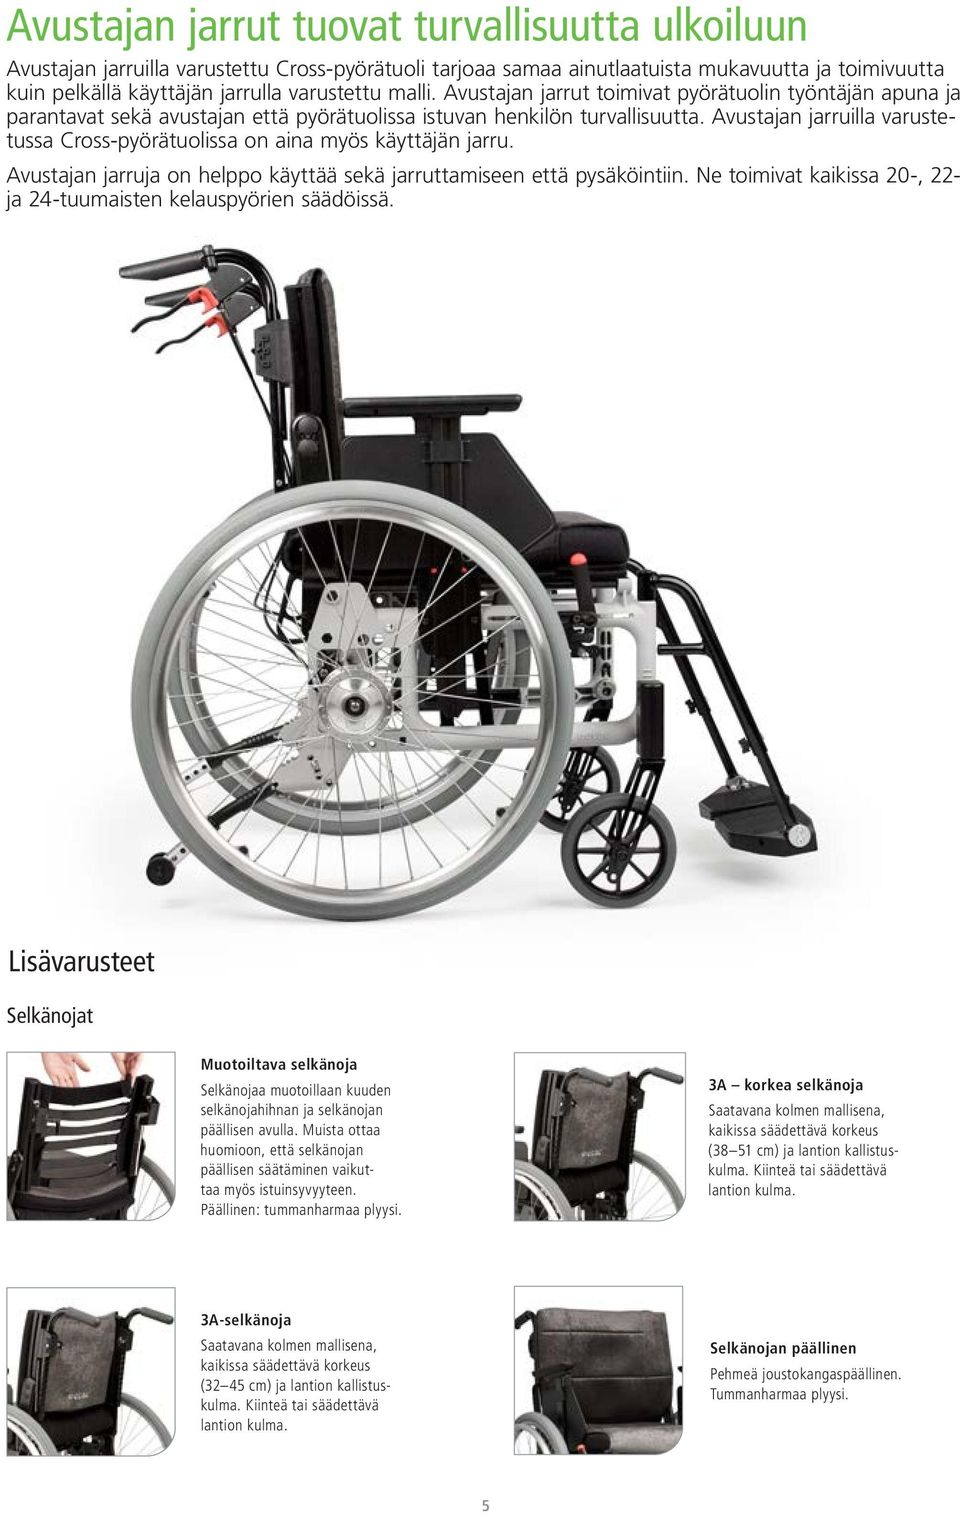 Avustajan jarruilla varustetussa Cross-pyörätuolissa on aina myös käyttäjän jarru. Avustajan jarruja on helppo käyttää sekä jarruttamiseen että pysäköintiin.